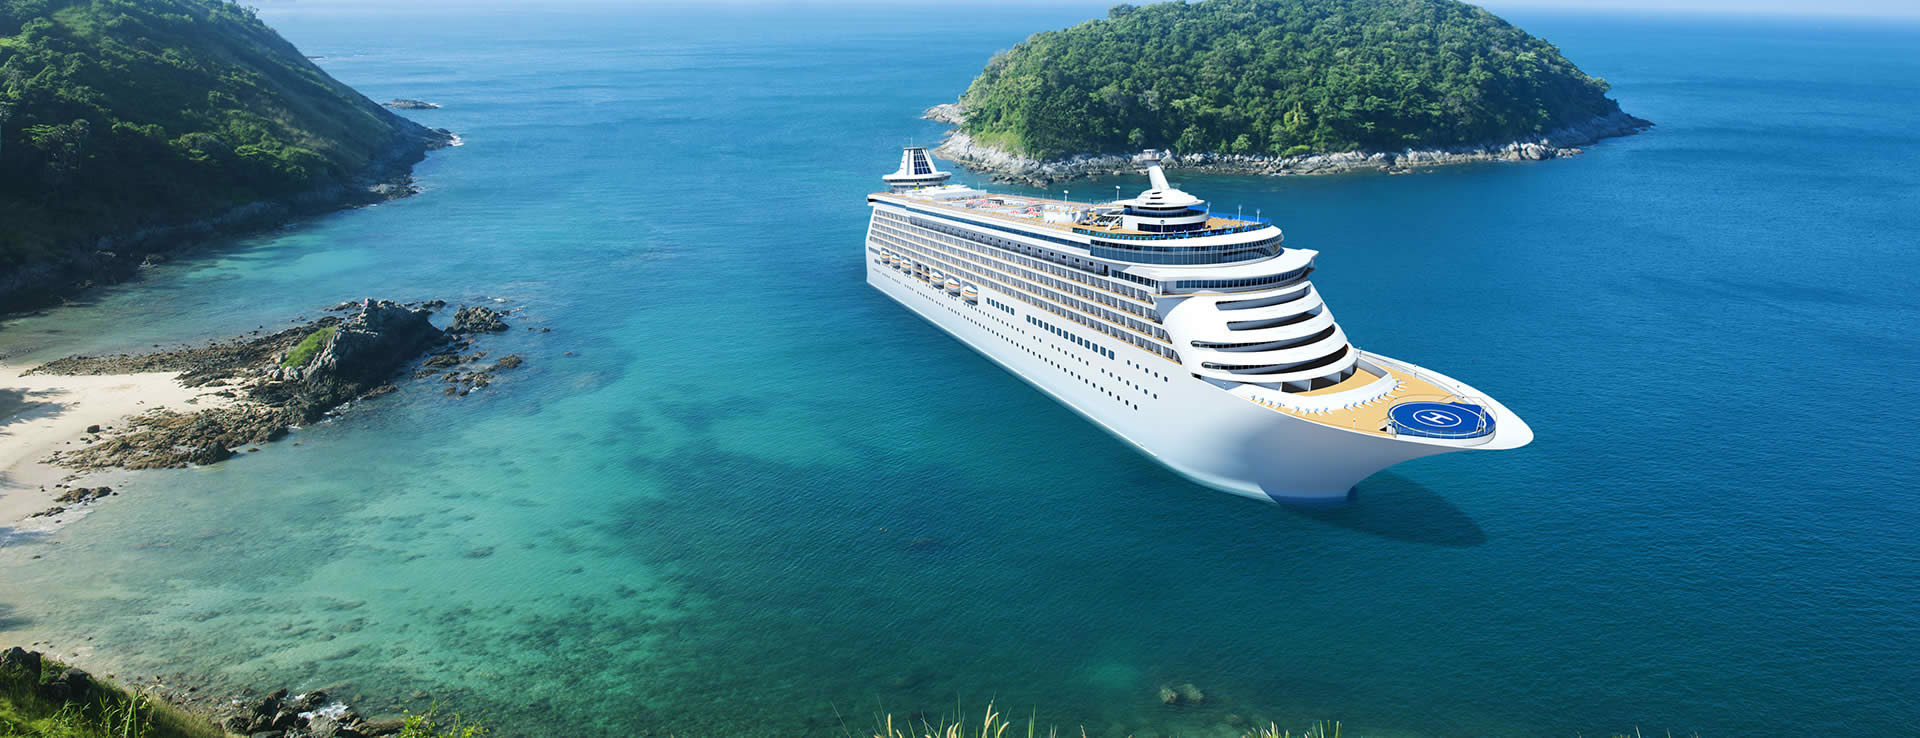 cruise ship sailing in Caribbean